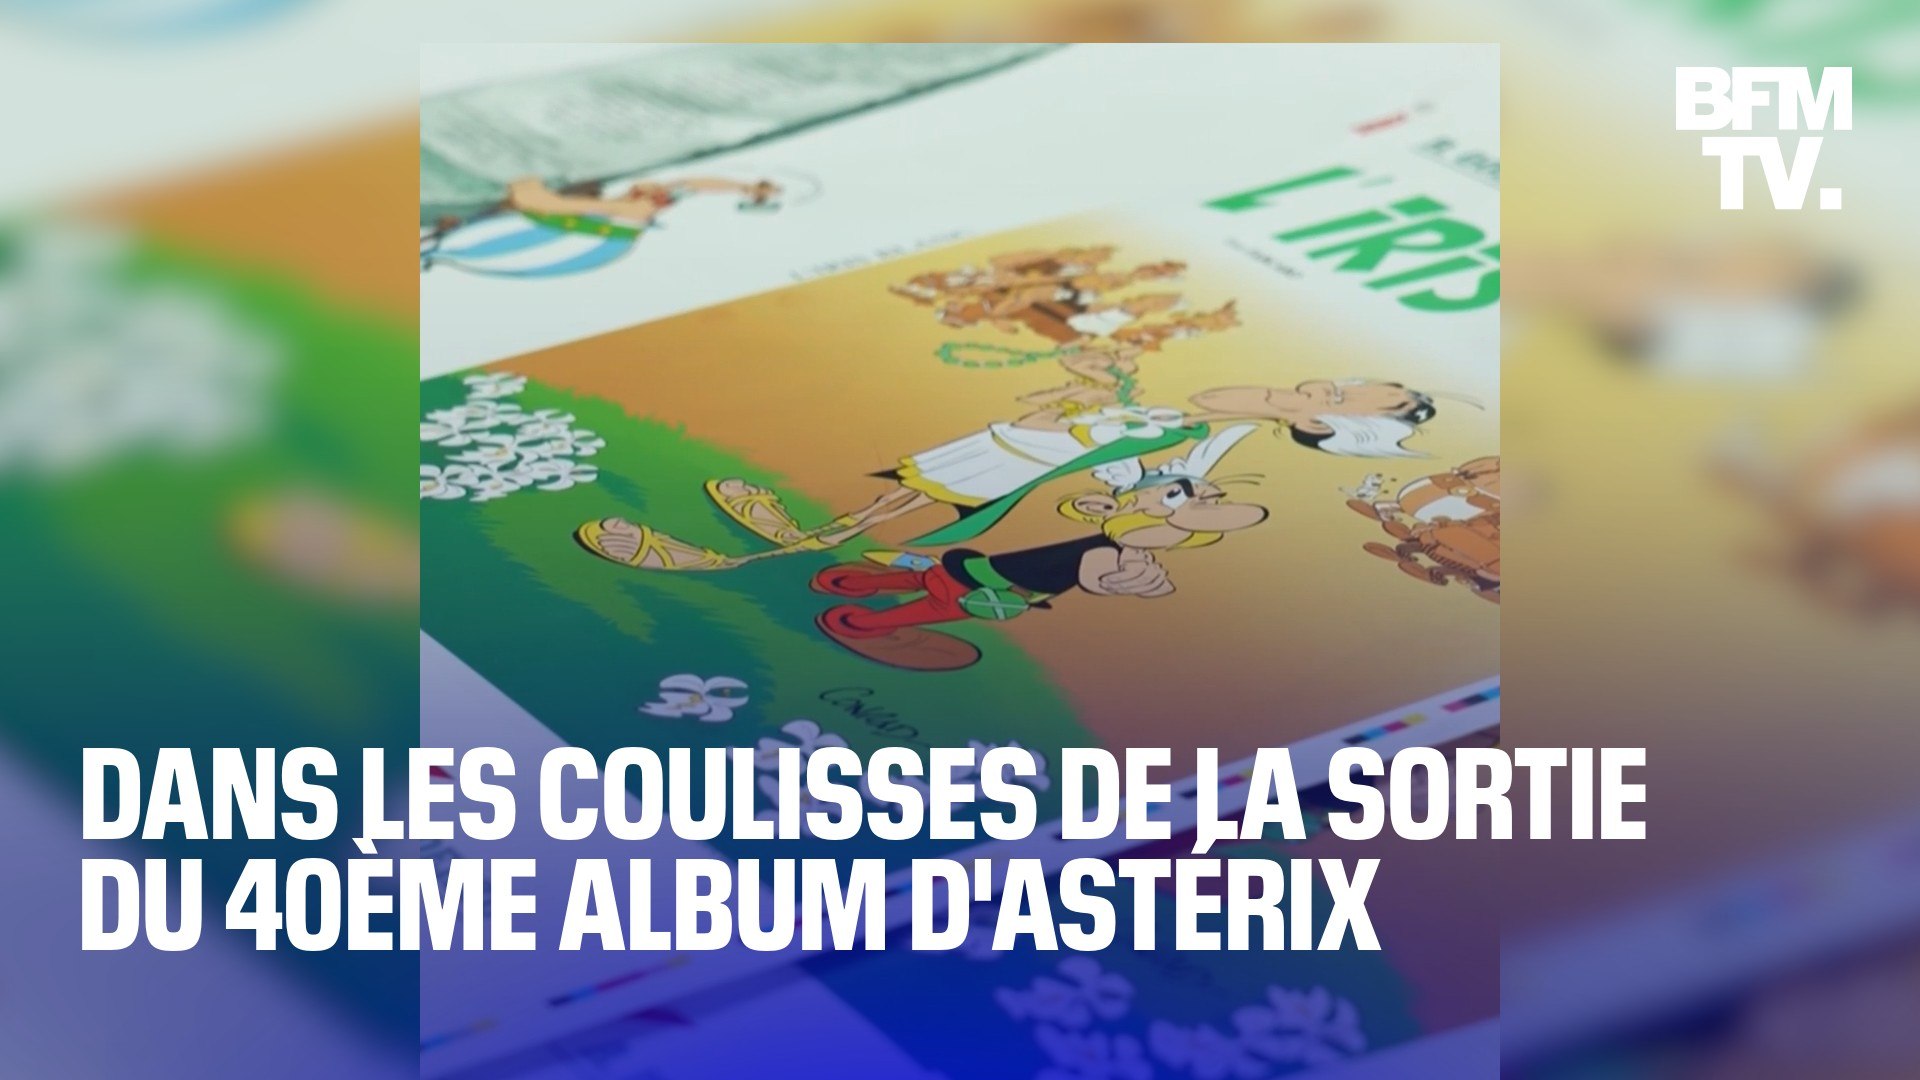 L'Iris Blanc : découvrez le 40ème album Astérix